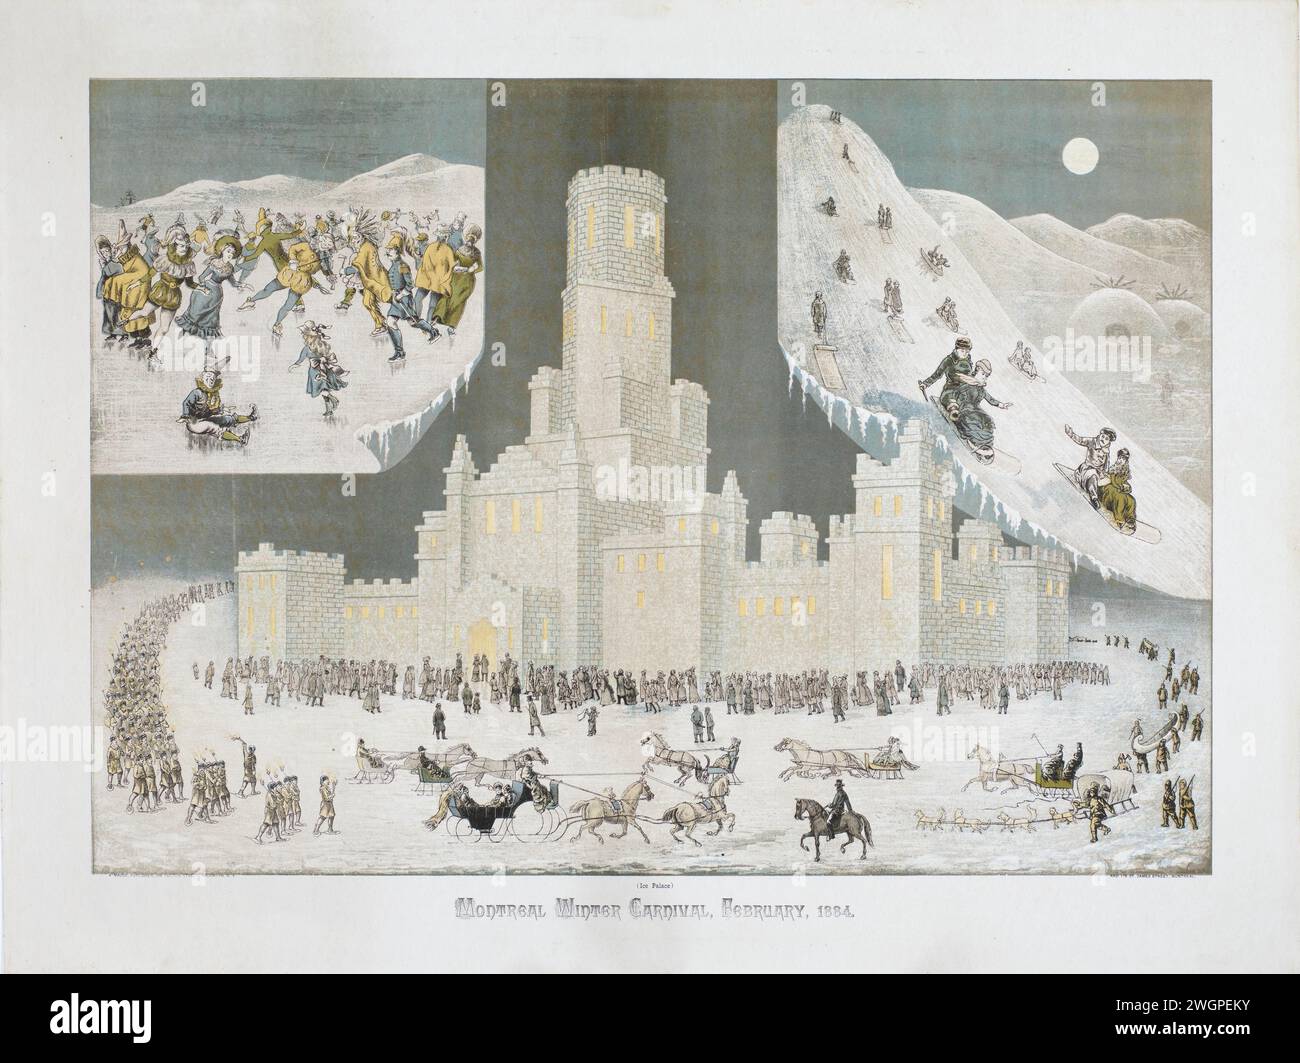 Vintage Print « Carnaval d’hiver de Montréal, février 1884 ». Cette chromolithographie montre des raquettes dans une procession aux flambeaux sur le mont Royal, la colline située au centre de la ville. Le Palais de glace était un élément fondamental des carnavals de Montréal. Banque D'Images